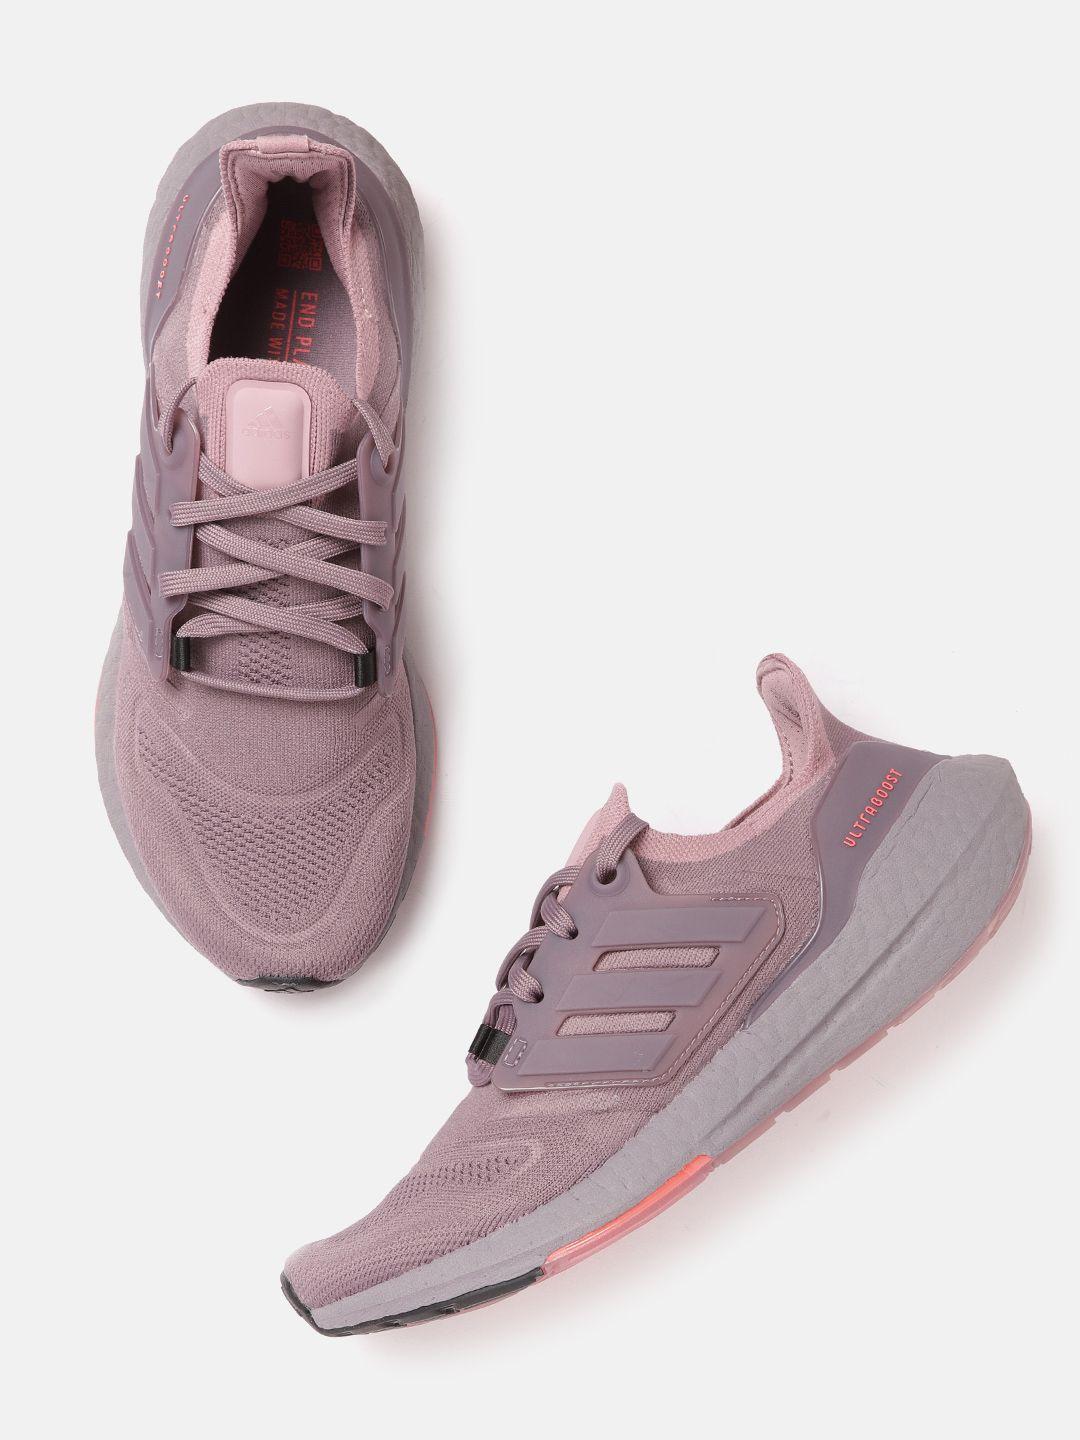 adidas-women-mauve-woven-design-ultraboost-22-running-shoes